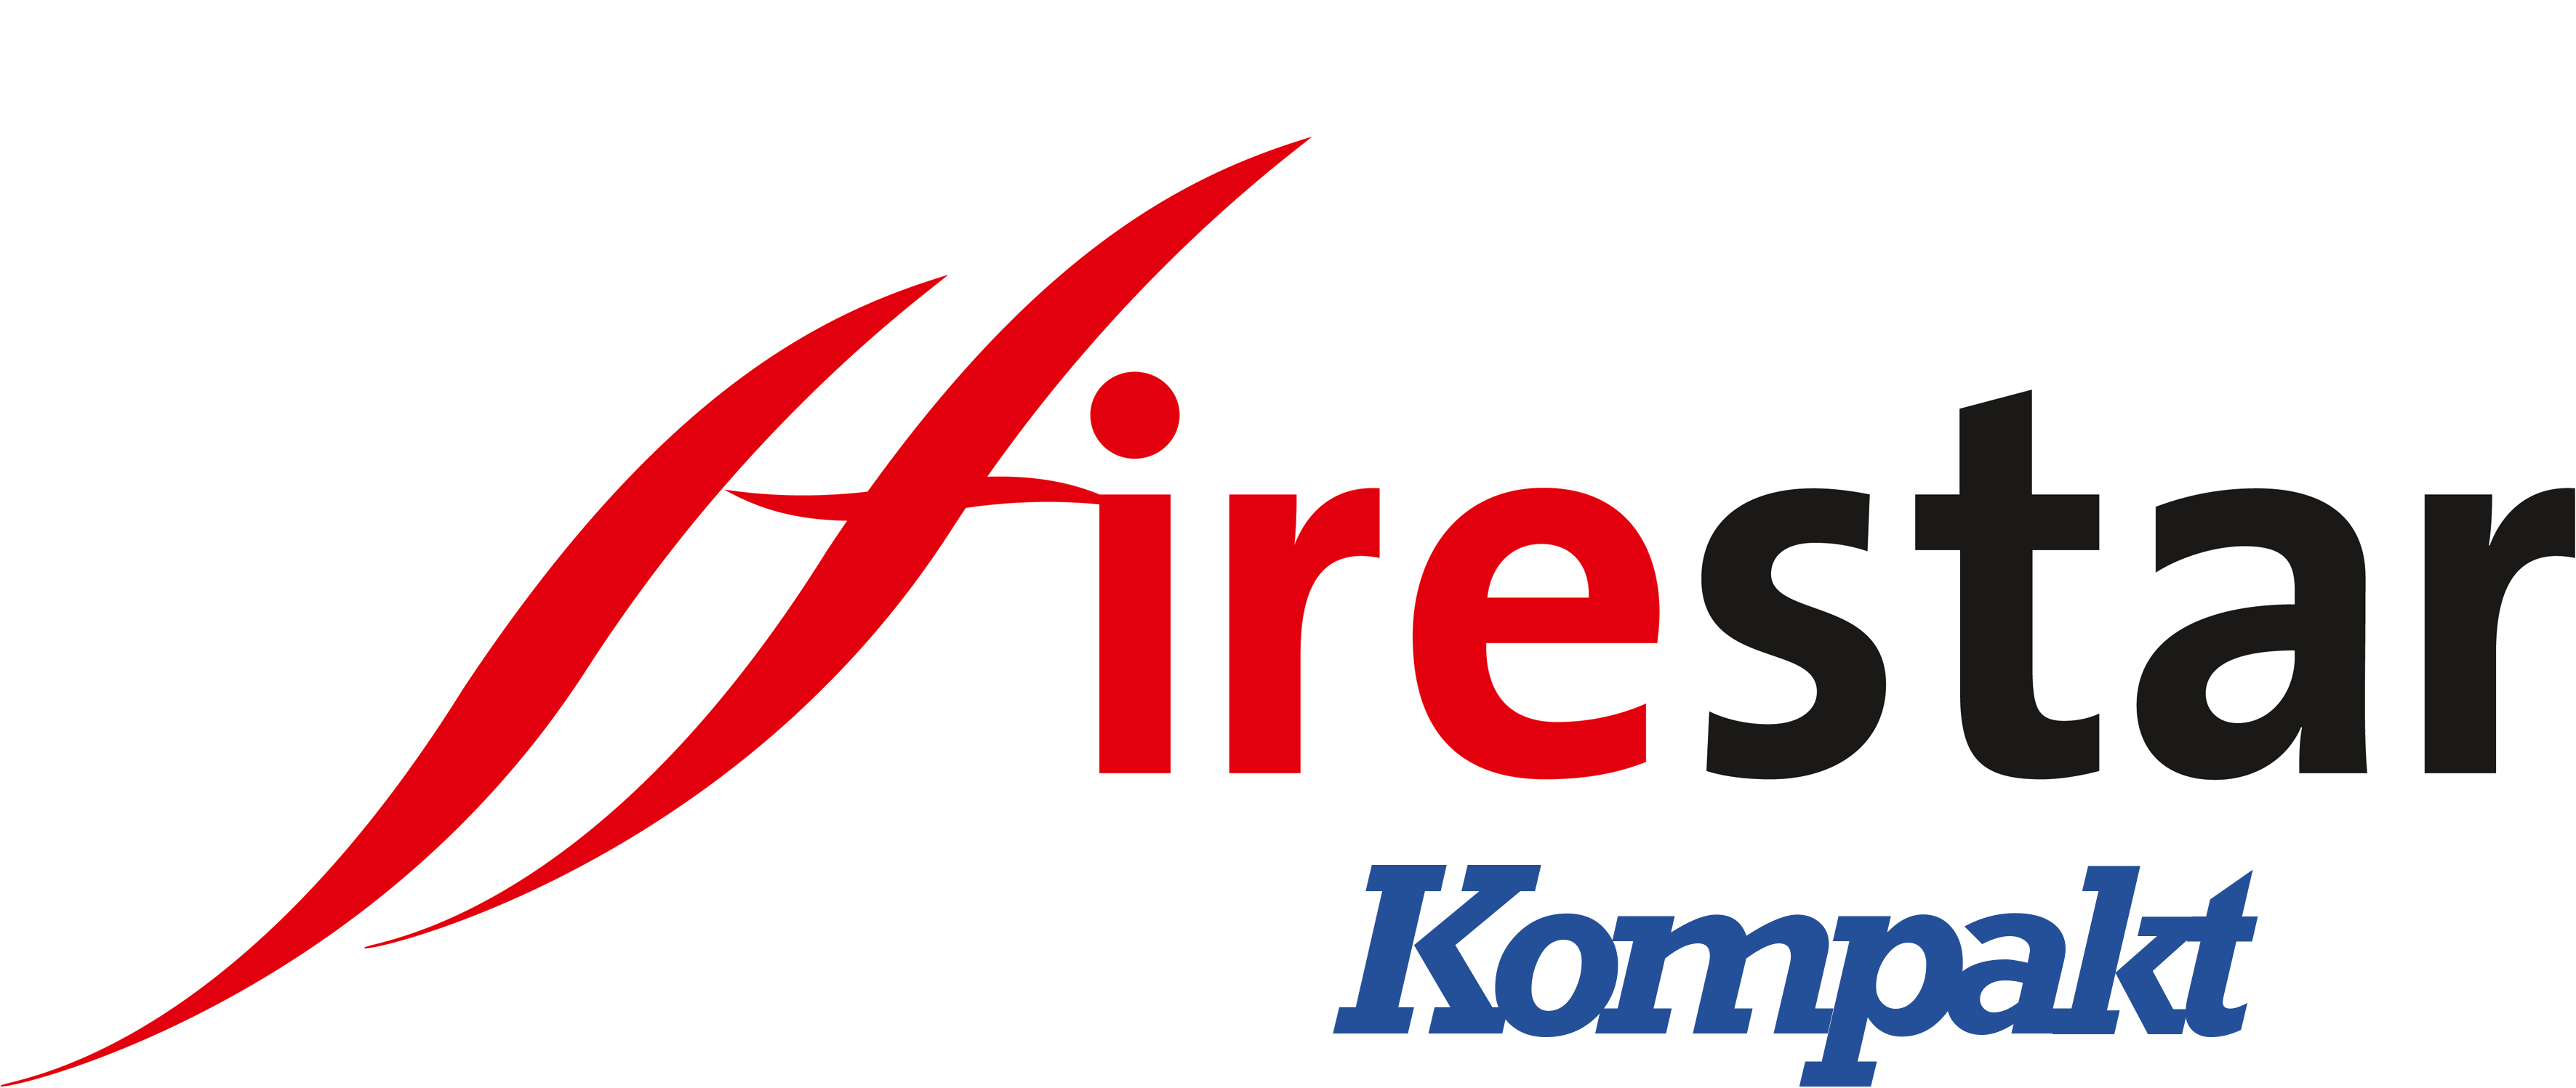 Série Kompakt Firestar